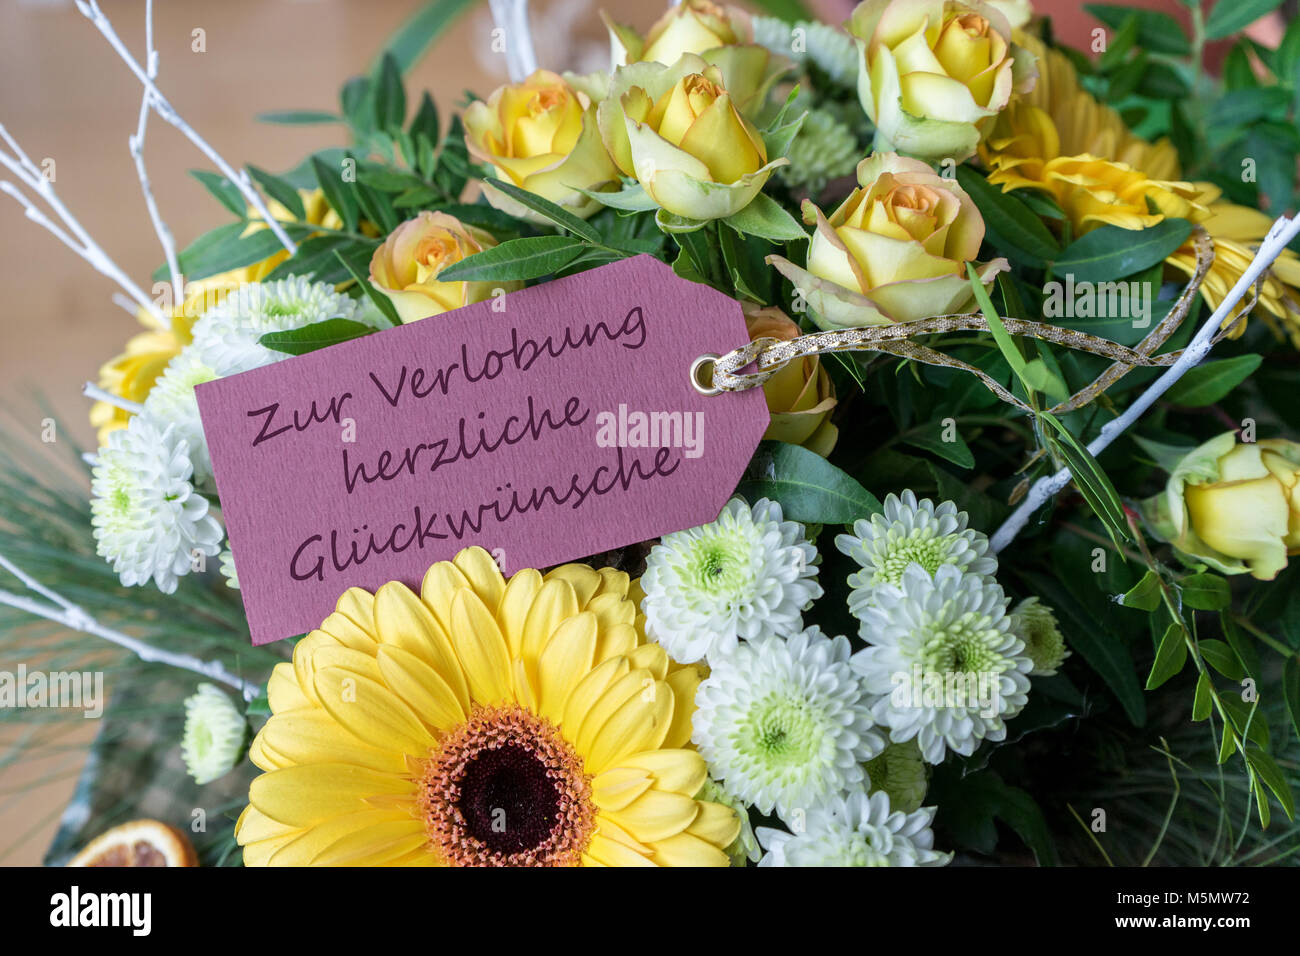 Grußkarte für die Verlobung mit einem Blumenstrauß aus gelben und weißen Rosen, Gerberas, Chrysanthemen und deutschem Text: Herzlichen Glückwunsch zum Engagement Stockfoto